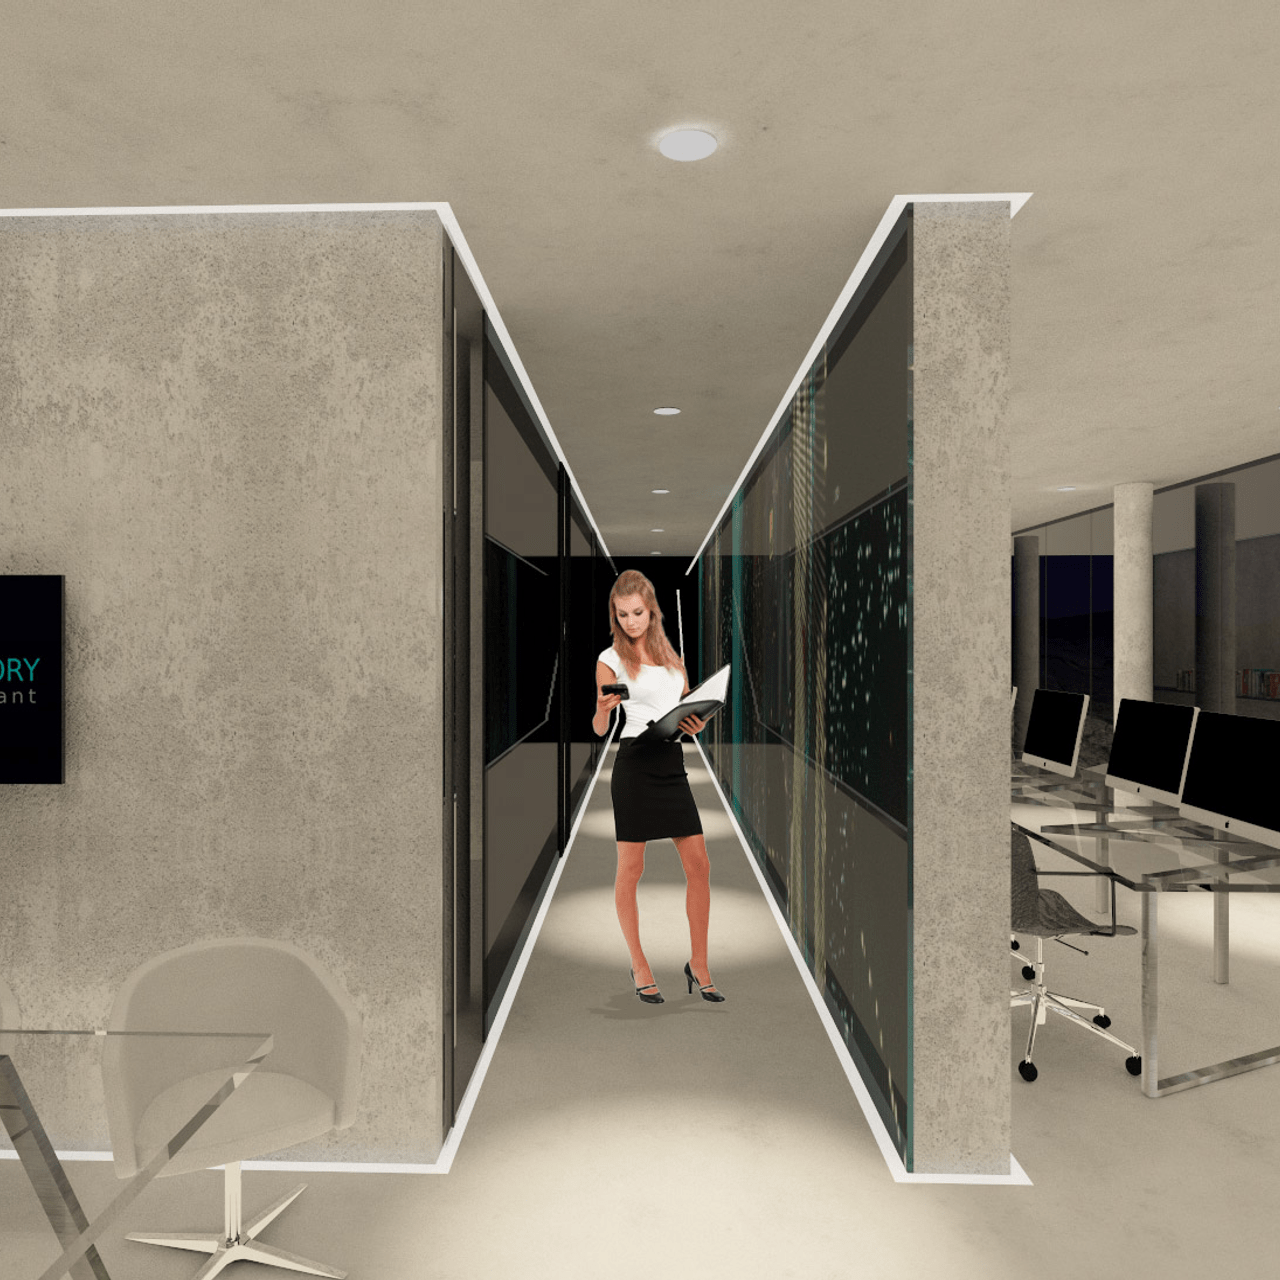 Lo screenshot di una stanza dell'ufficio virtuale 3D di Sercam Advisory realizzato da Advepa